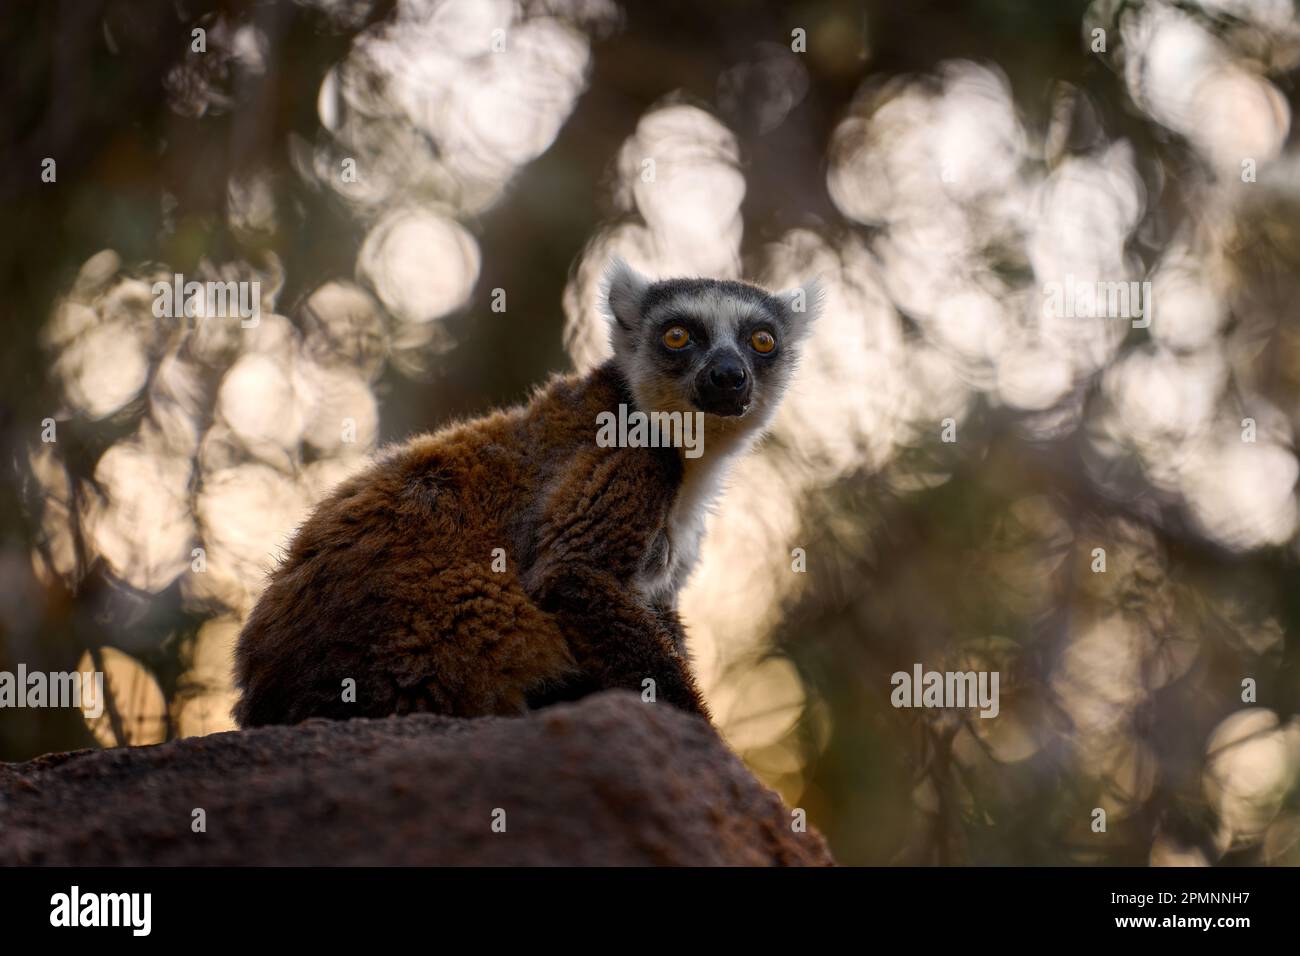 Madagascar fauna selvatica, scimmia. Lemur con coda ad anello, Lemur catta, con fondo verde chiaro. Animale da Madagascar, Africa, occhi arancioni. Mammale eveni Foto Stock